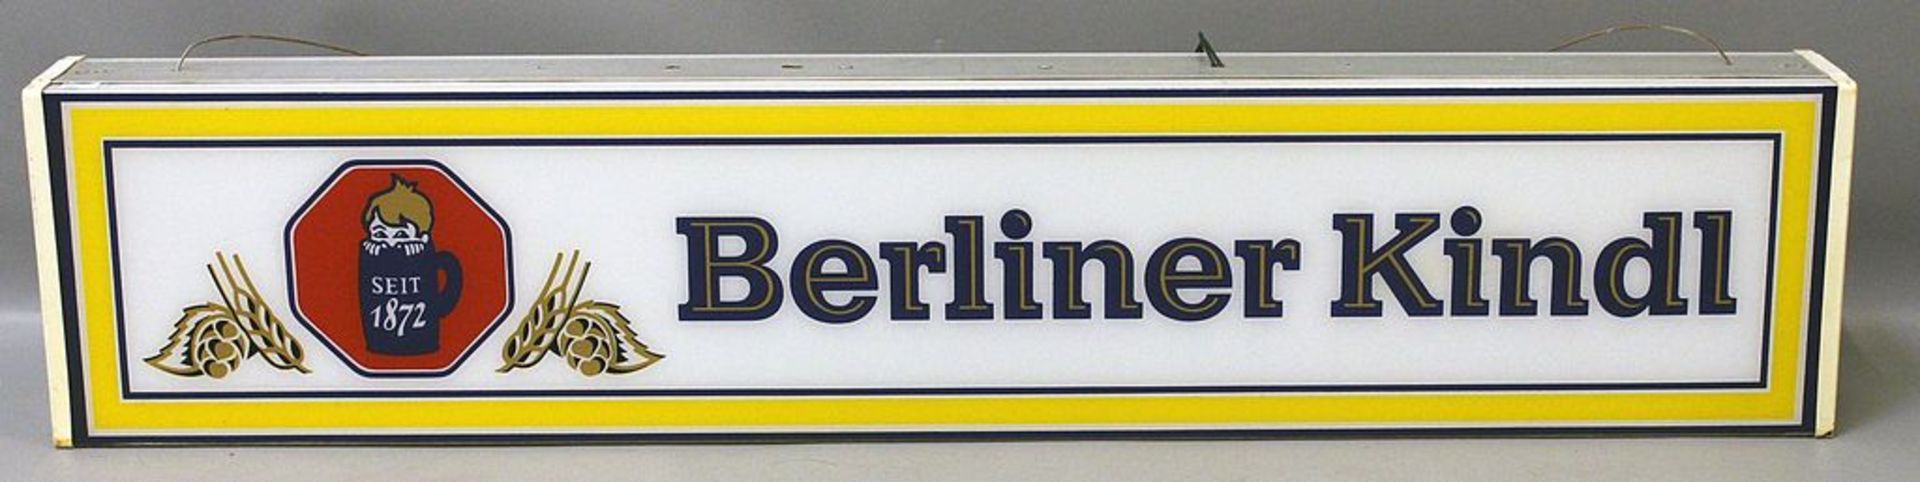 Leuchtreklame "Berliner Kindl".